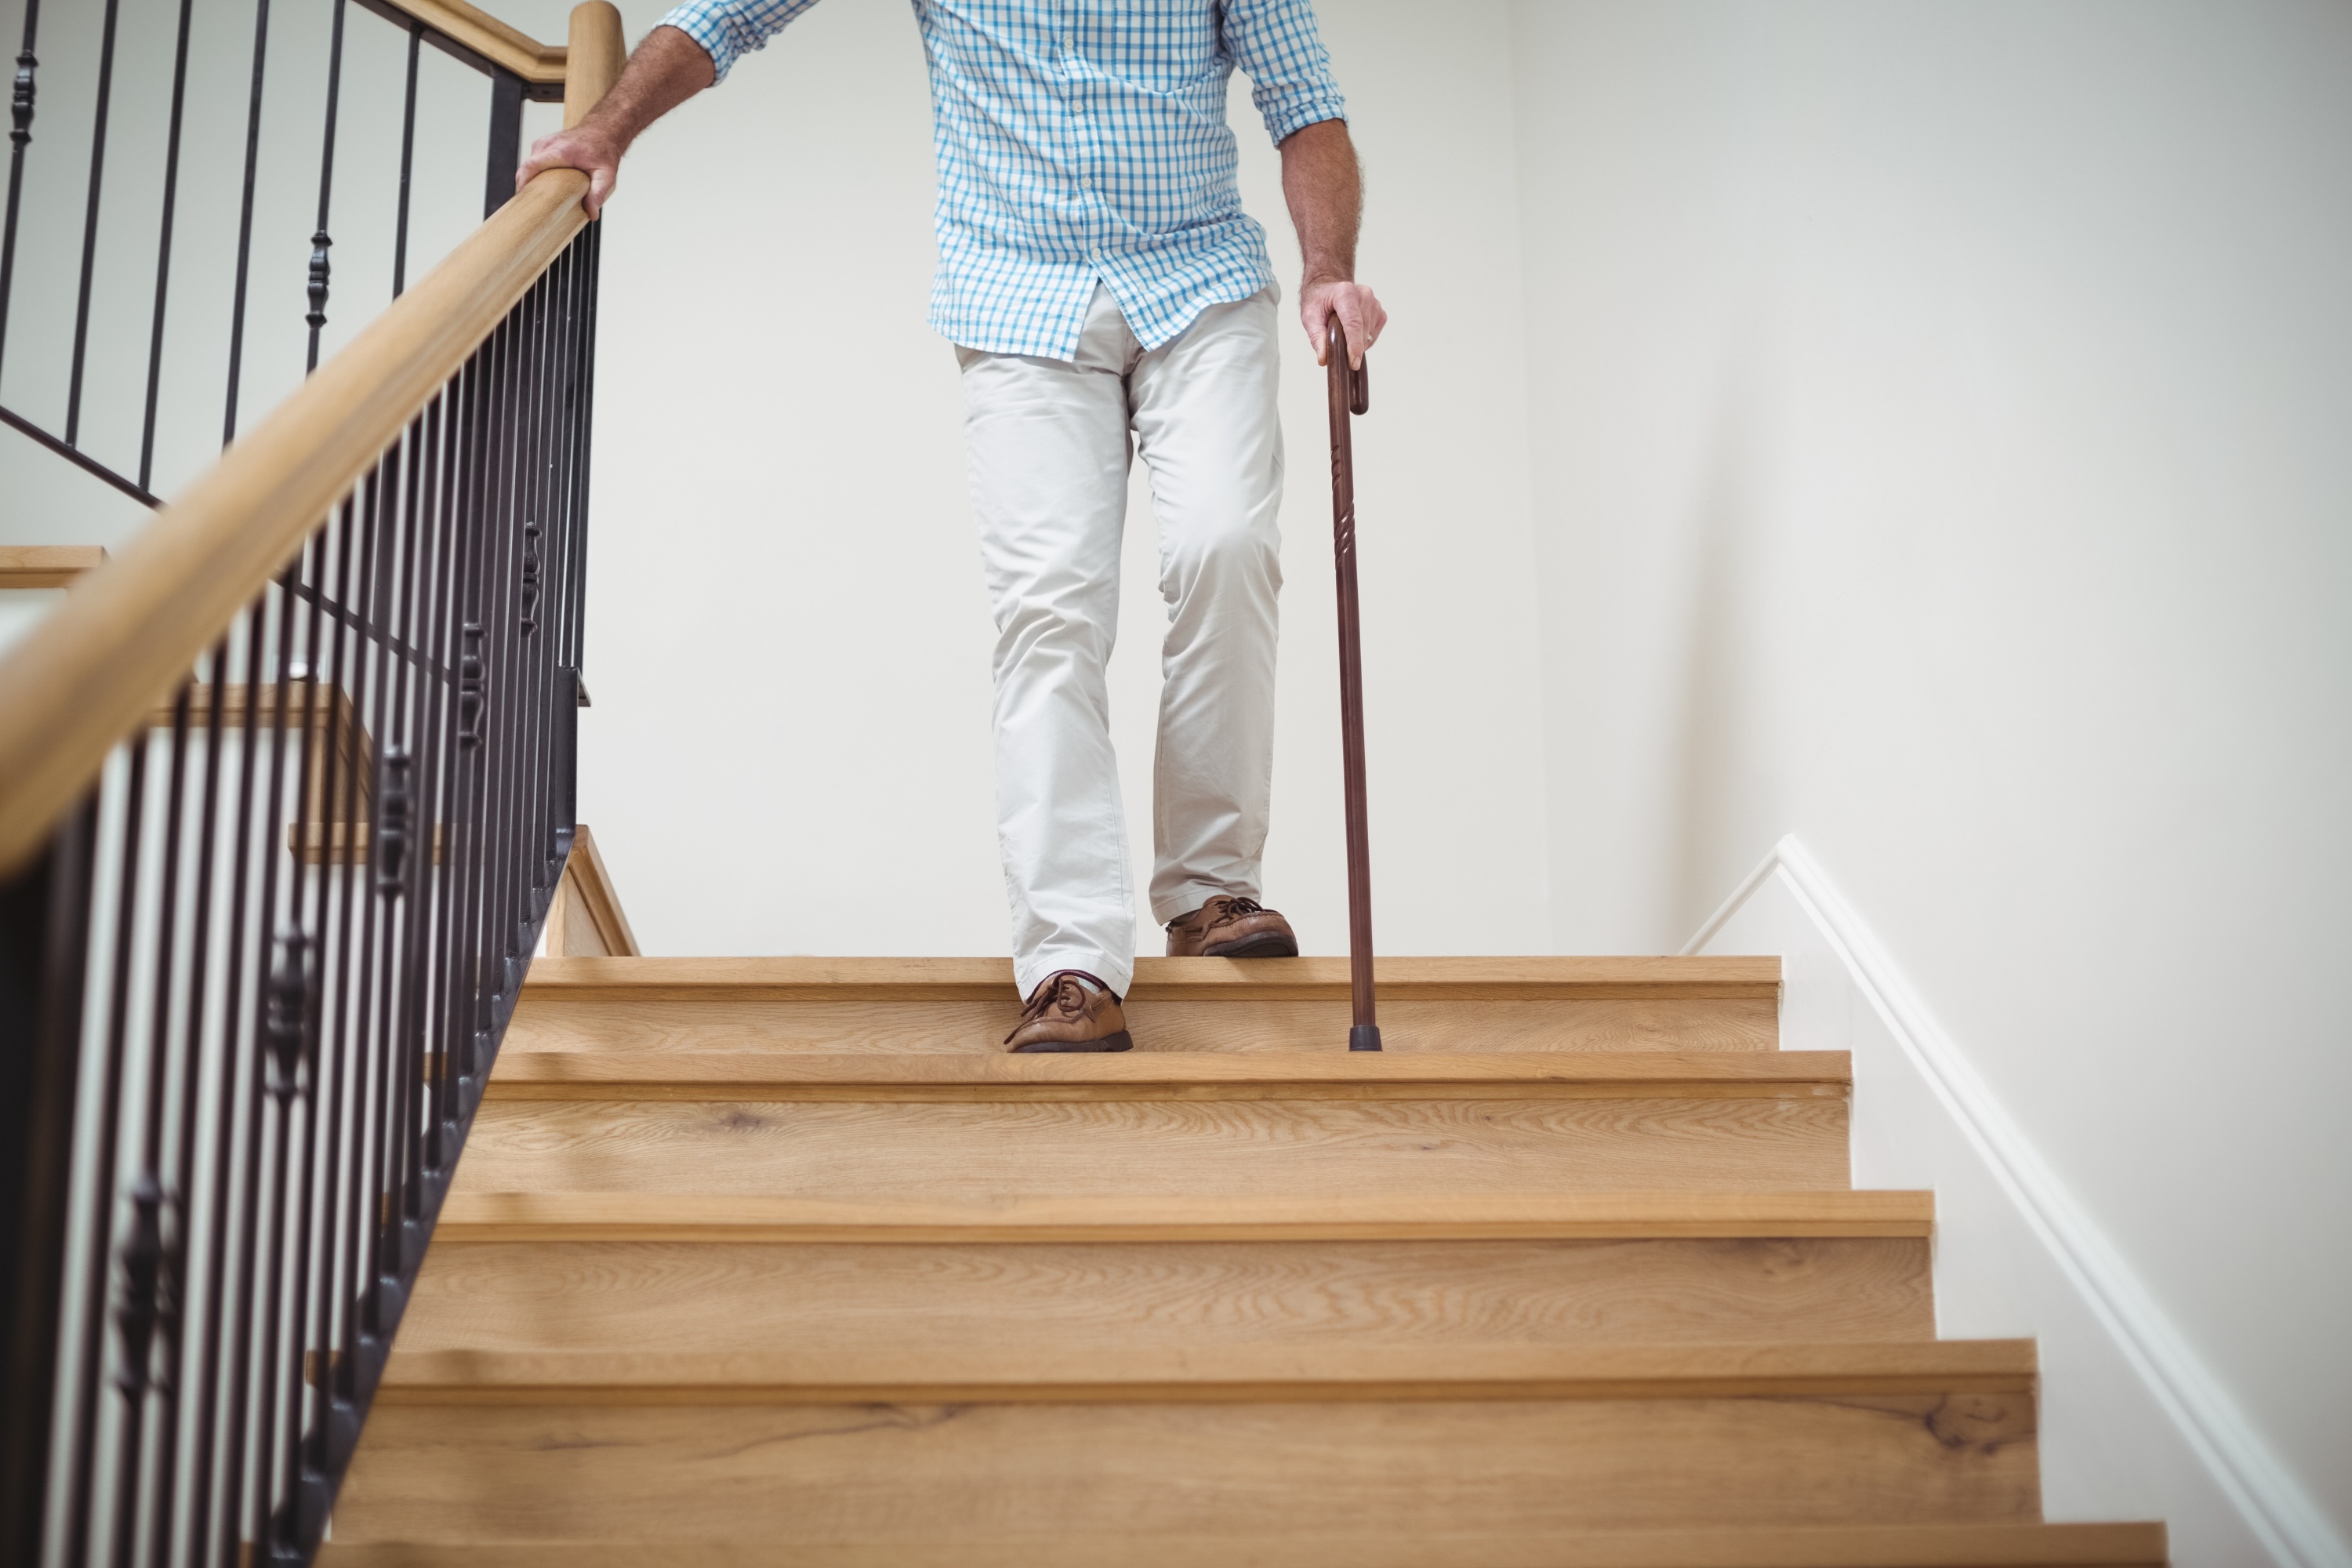 Personnes âgées : comment sécuriser un escalier ?